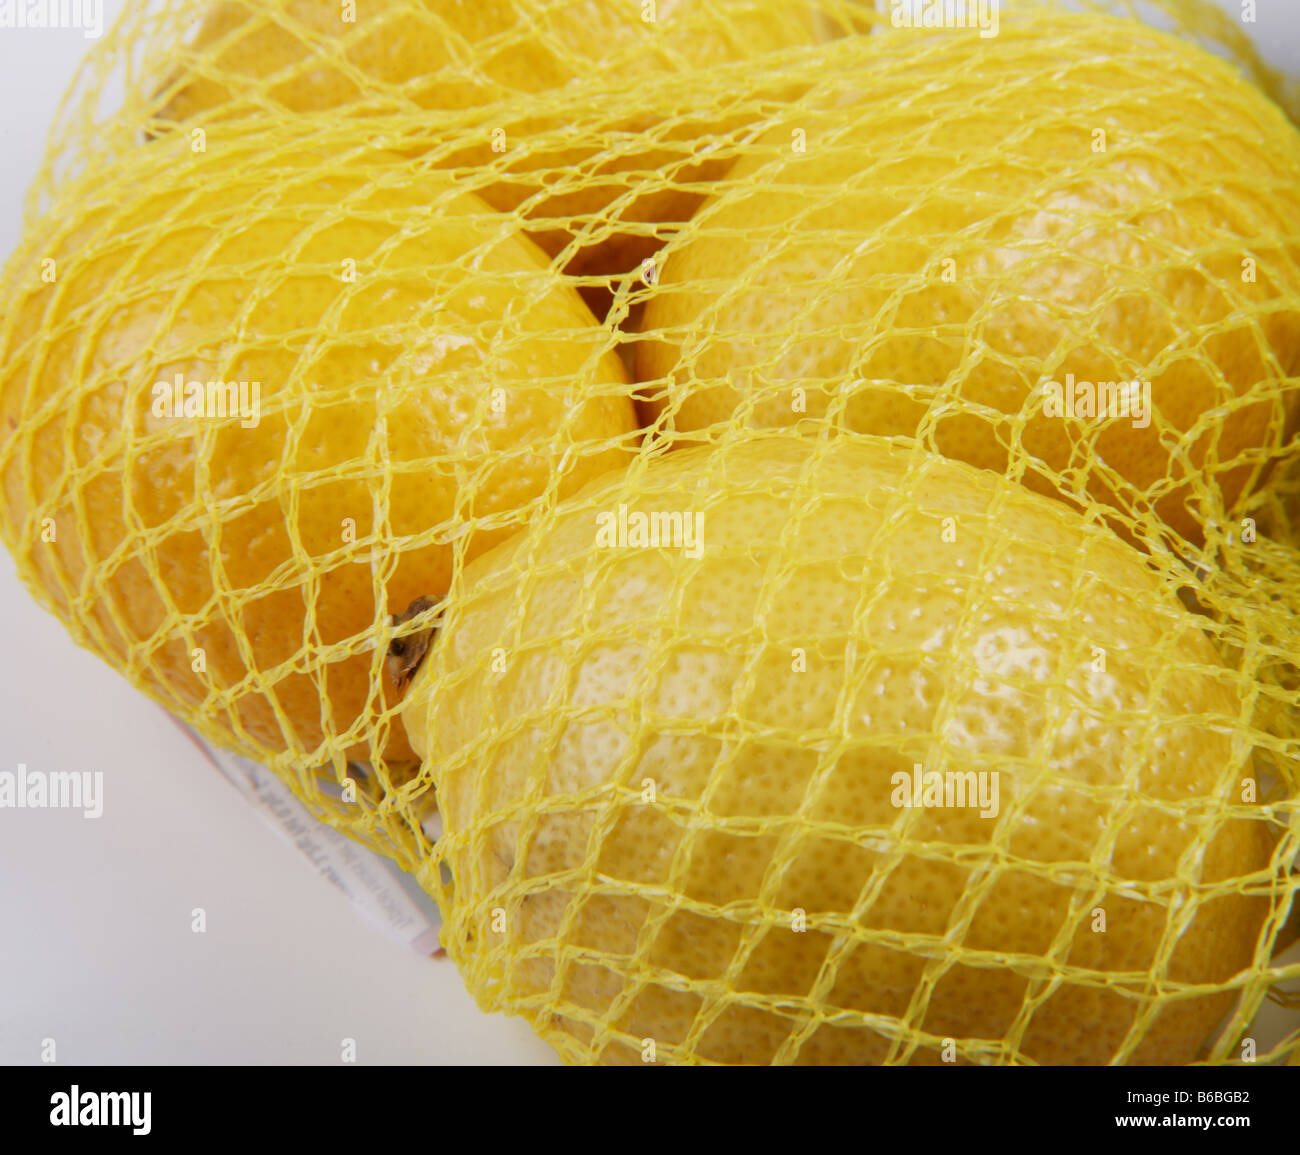 Net of Supermarket Bought Lemons Stock Photo